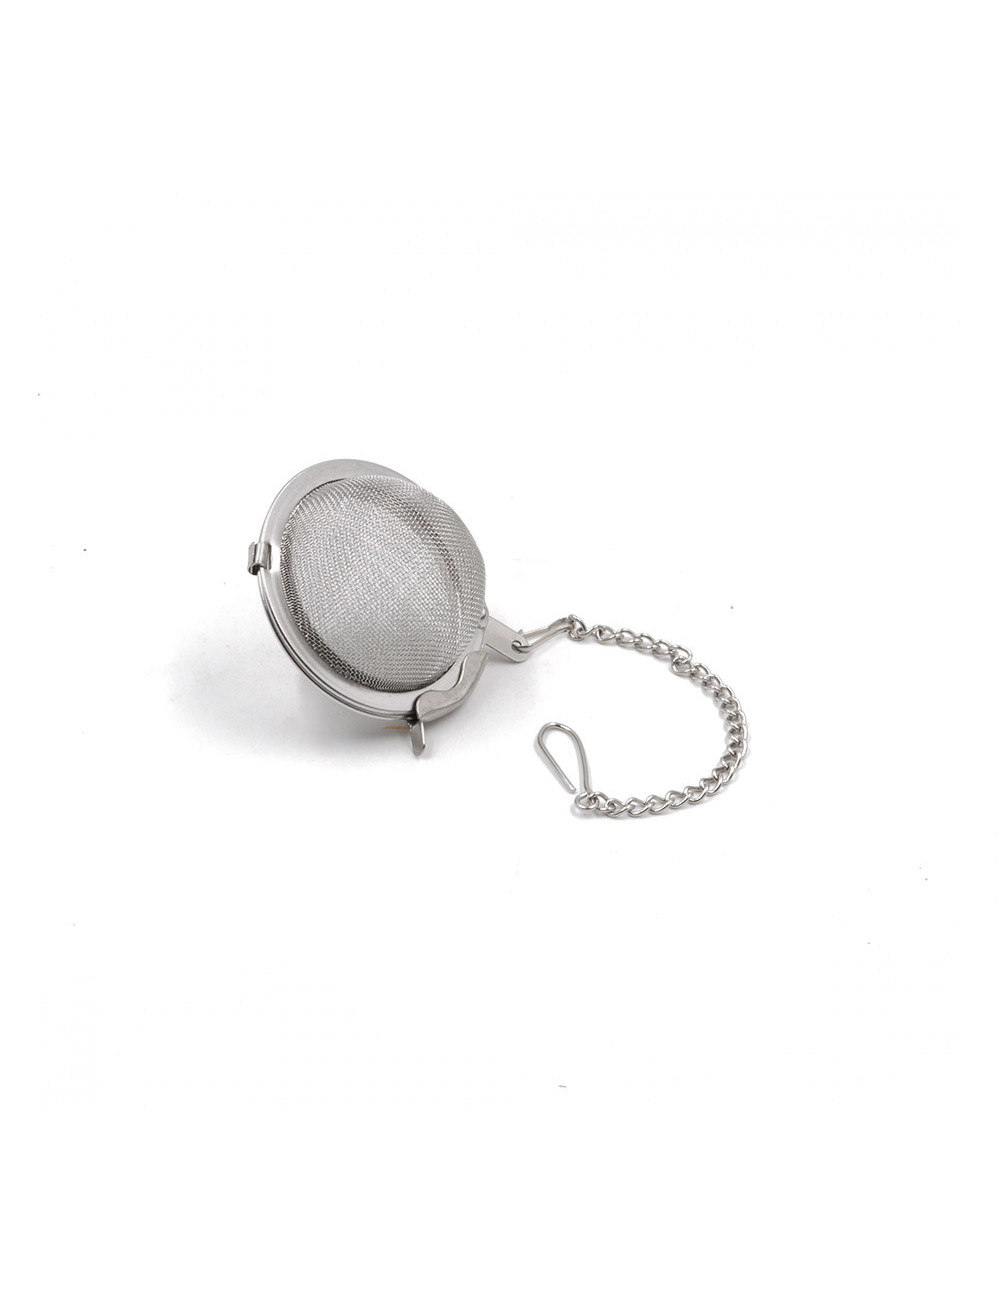 Filtro a sfera Ø 6,5 cm per il tè con catenella e gancio - La Pianta del Tè shop online